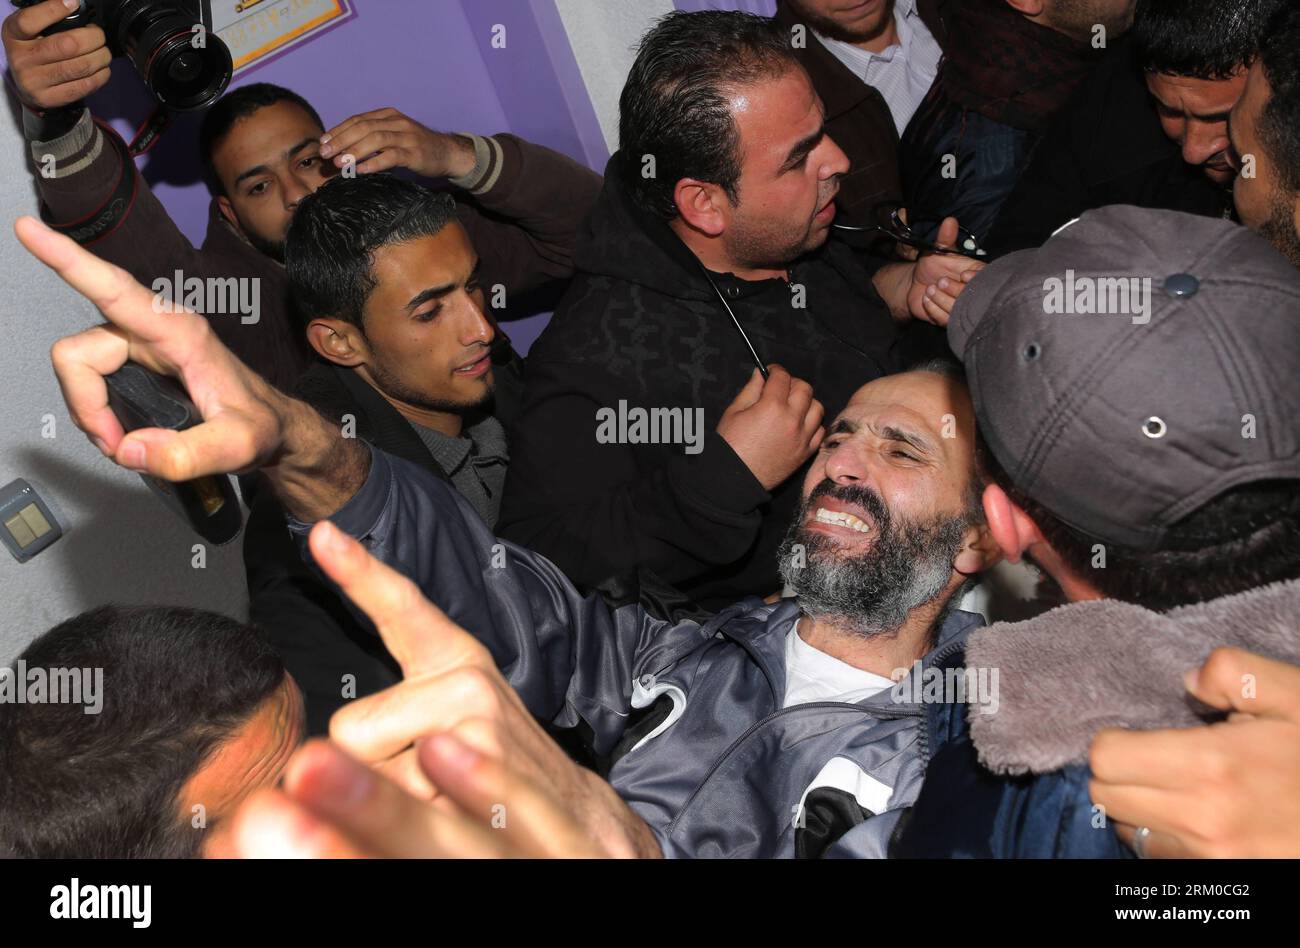 Bildnummer : 59366513 Datum : 17.03.2013 Copyright : imago/Xinhua (130317) -- GAZA, 17 mars 2013 (Xinhua) -- le prisonnier palestinien Ayman Sharawneh est transporté à son arrivée à l'hôpital al-Shifa dans la ville de Gaza, le 17 mars 2013. Sharawneh est arrivé dimanche dans la bande de Gaza pour son exil temporaire, mettant fin à ses 260 jours de grève de la faim pour protester contre sa détention. (Xinhua/Wissam Nassar) MIDEAST-GAZA-PRISONNIERS-GRÈVE DE LA FAIM PUBLICATIONxNOTxINxCHN Gesellschaft Politik Ankunft politischer Gefangener Freilassung Hungerstreik premiumd x0x xac 2013 quer 59366513 Date 17 03 2013 Copyright Imago XINHU Banque D'Images